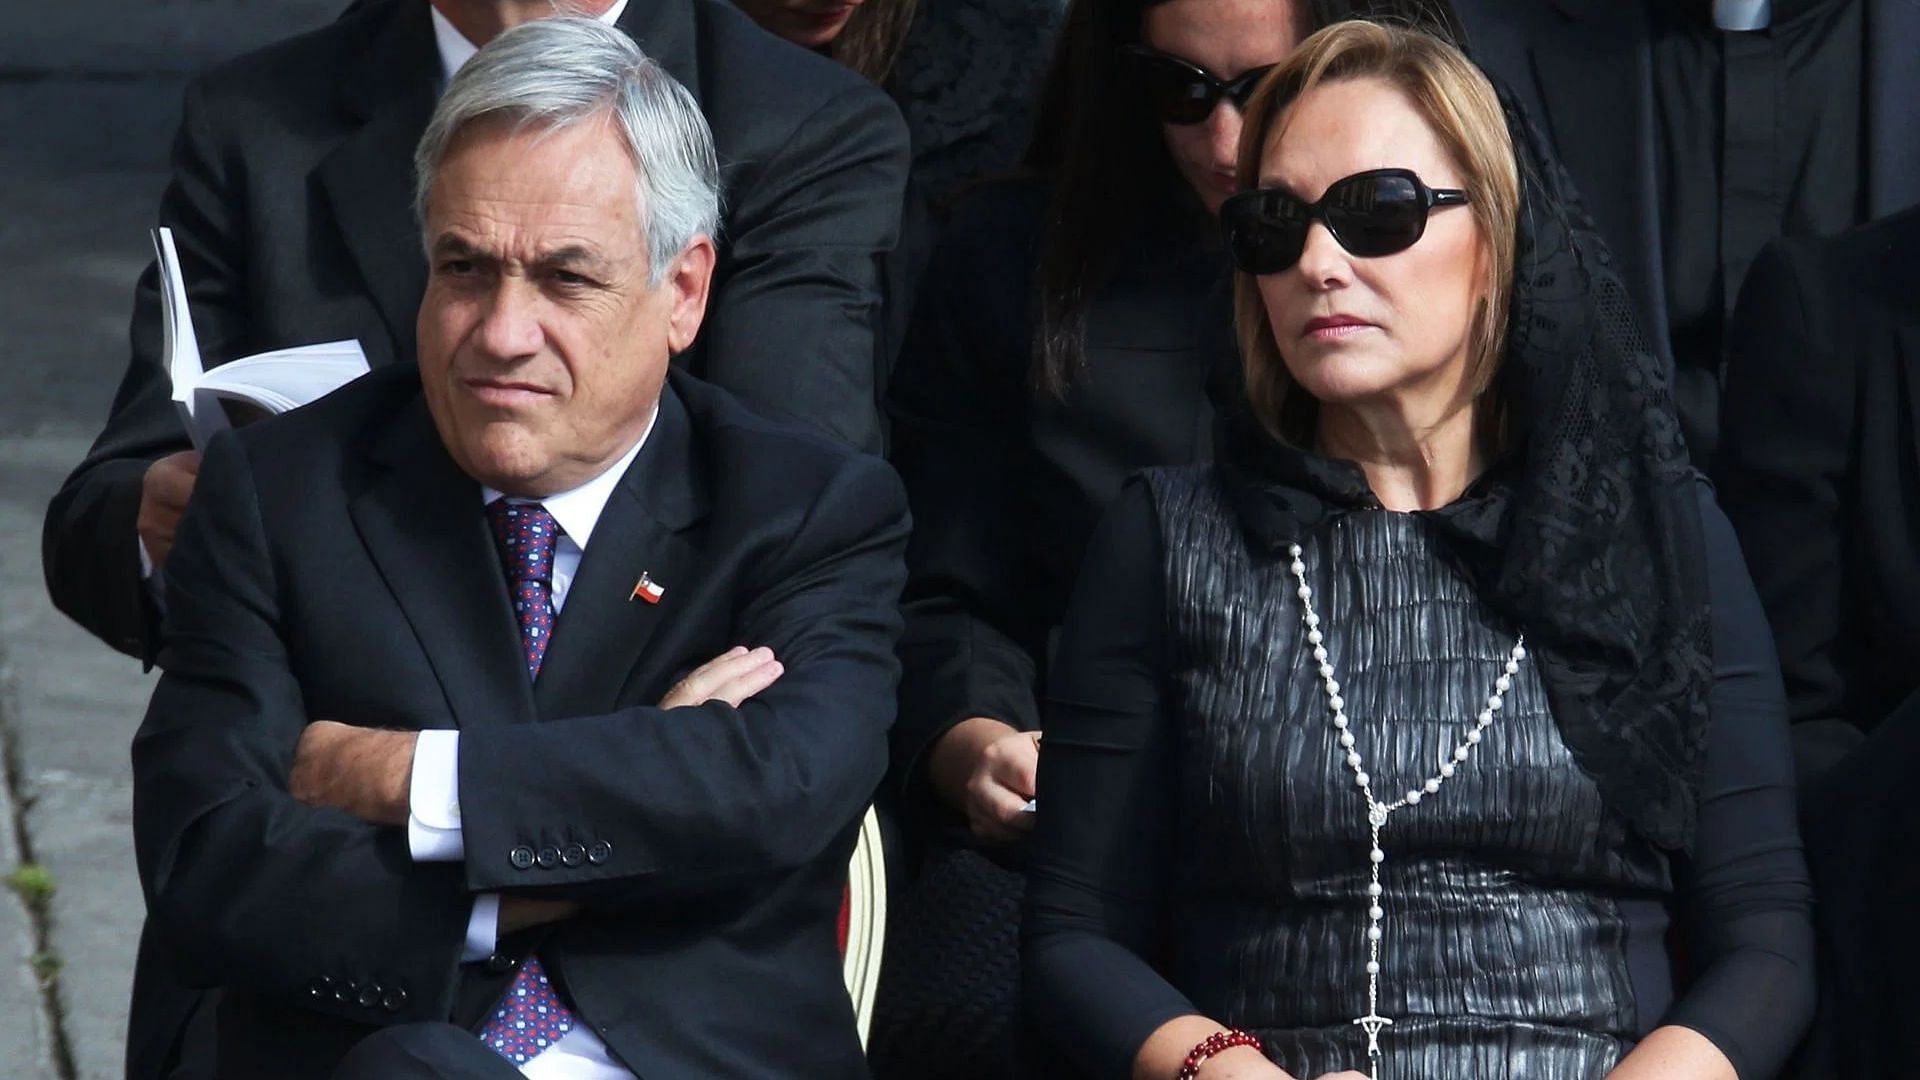 Chilean President Sebastian Pinera (L) and his wife Cecilia Morel (Image via Getty)